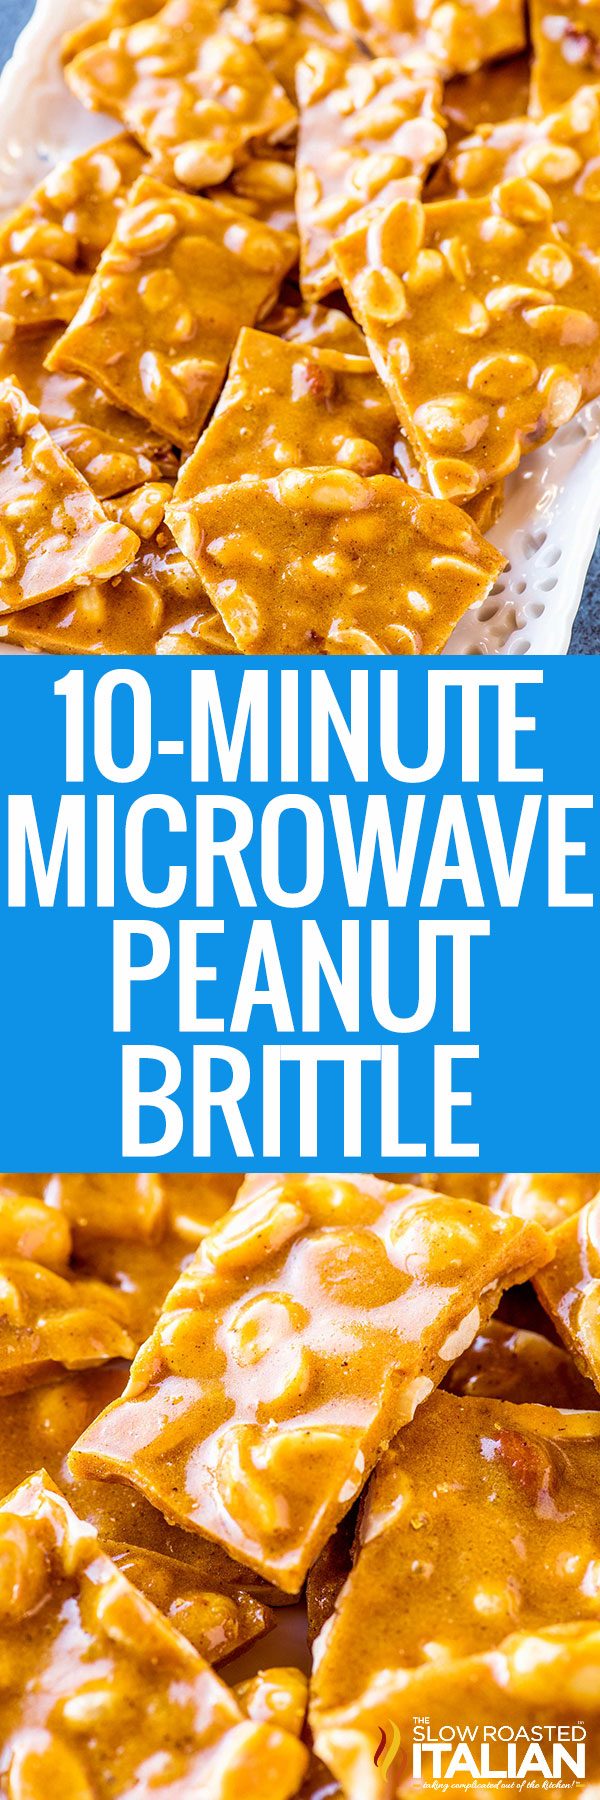 10 minute microwave peanut brittle 